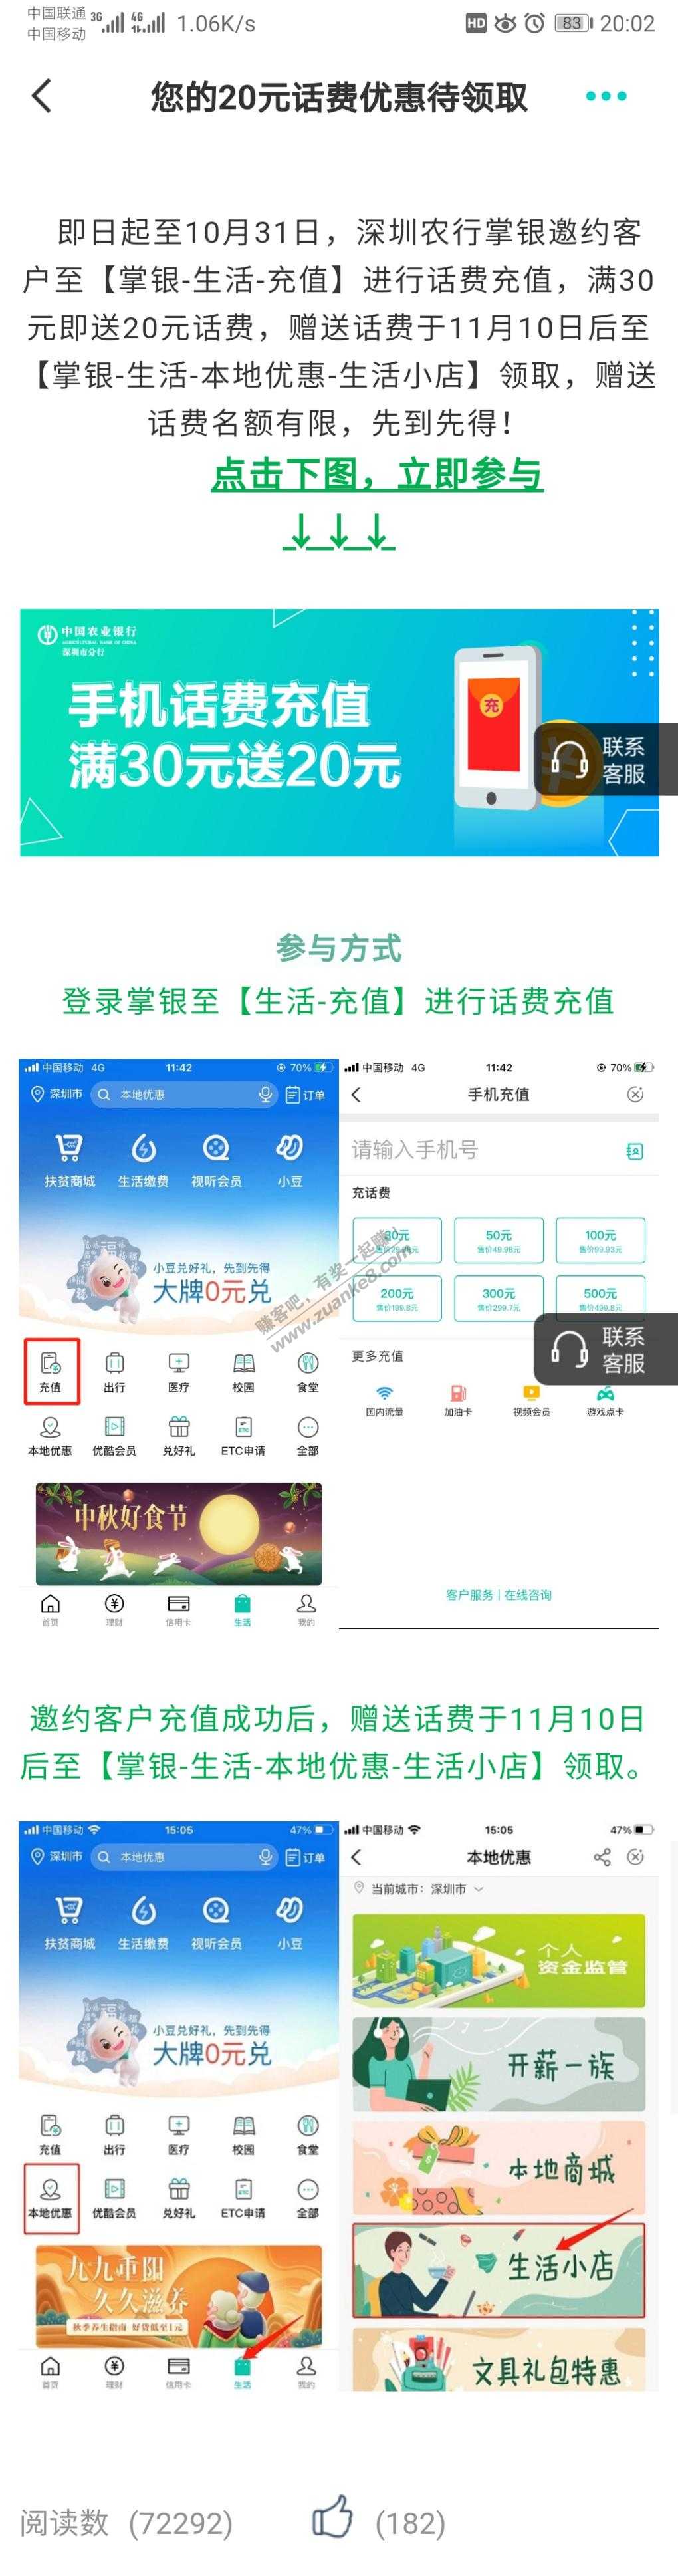 深圳农行-受腰手机充30送20-惠小助(52huixz.com)